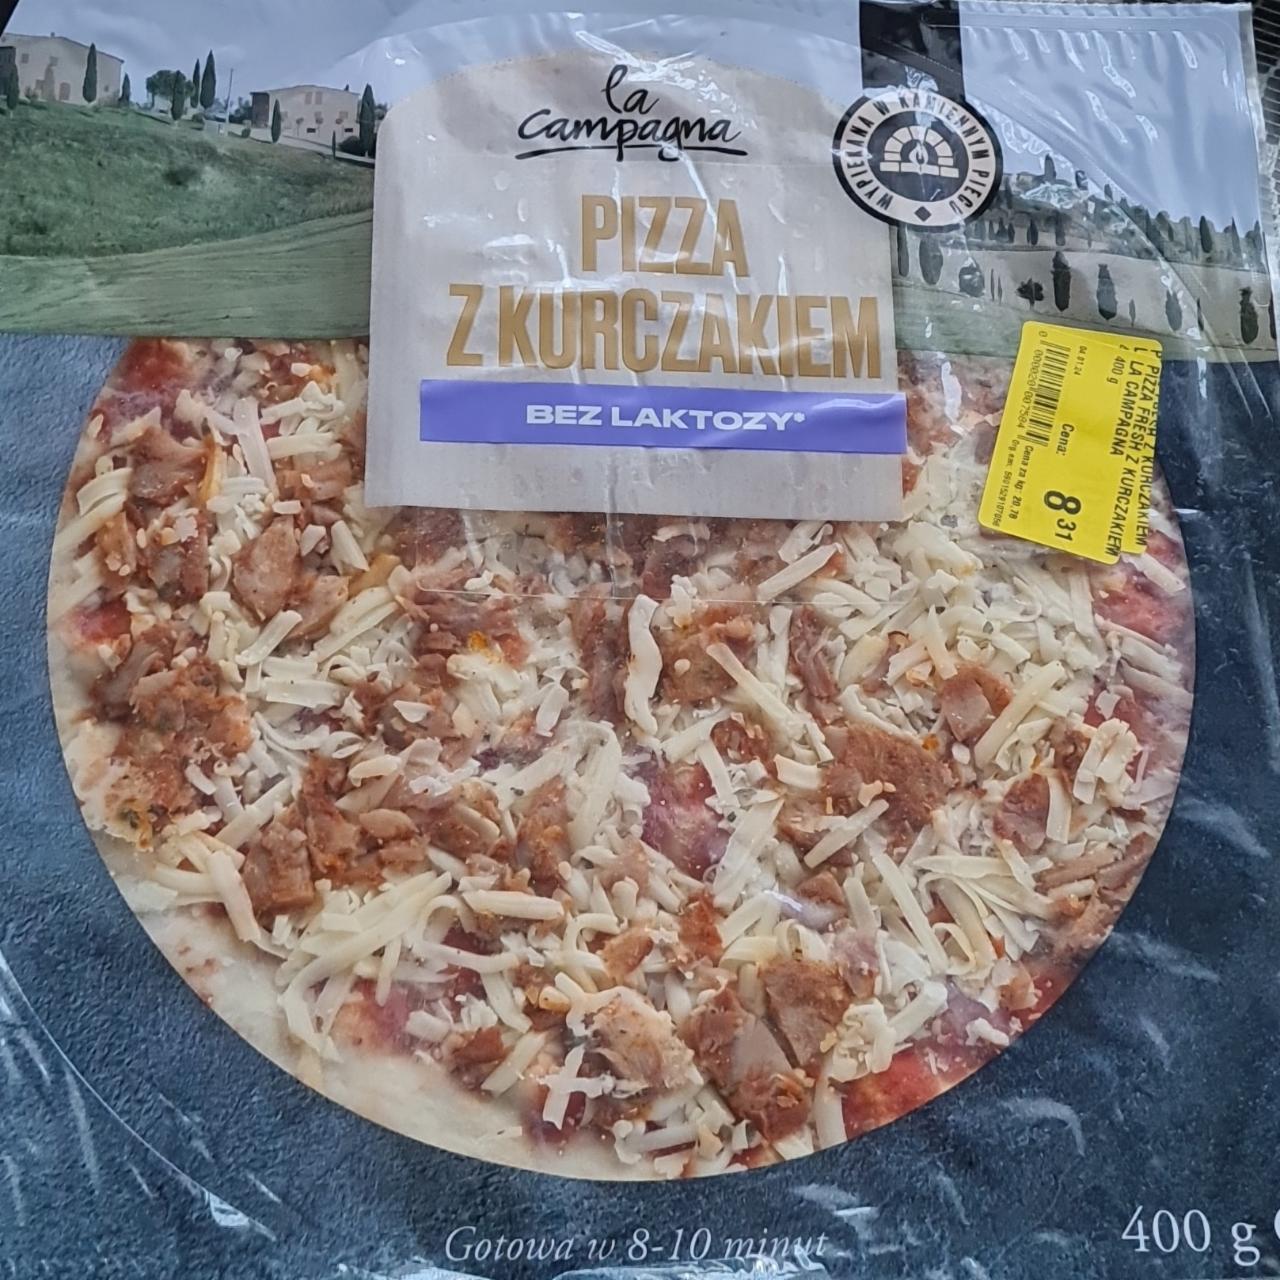 Zdjęcia - Pizza z kurczakiem bez laktozy La campagna